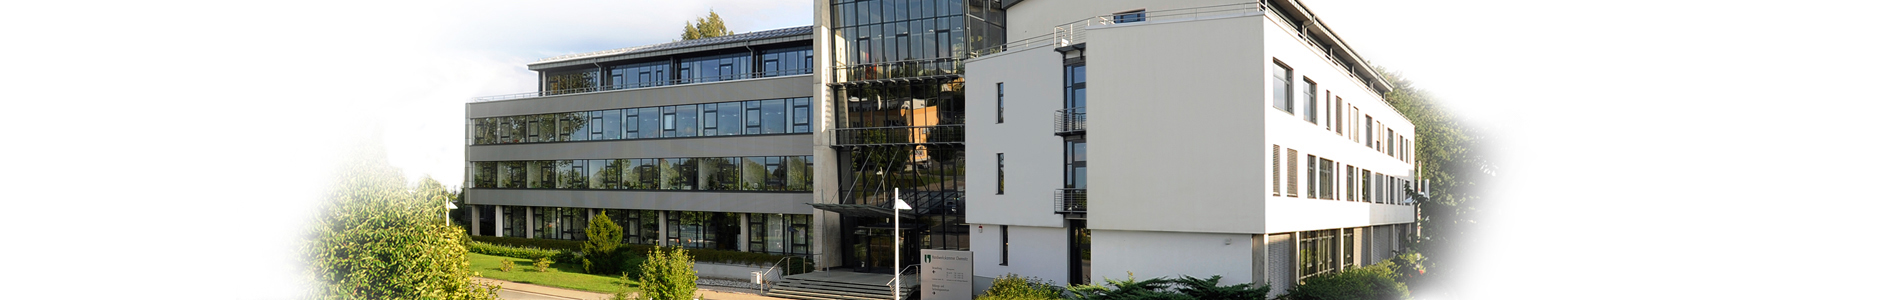 Bild vom Verwaltungsgebäude der Handwerkskammer Chemnitz